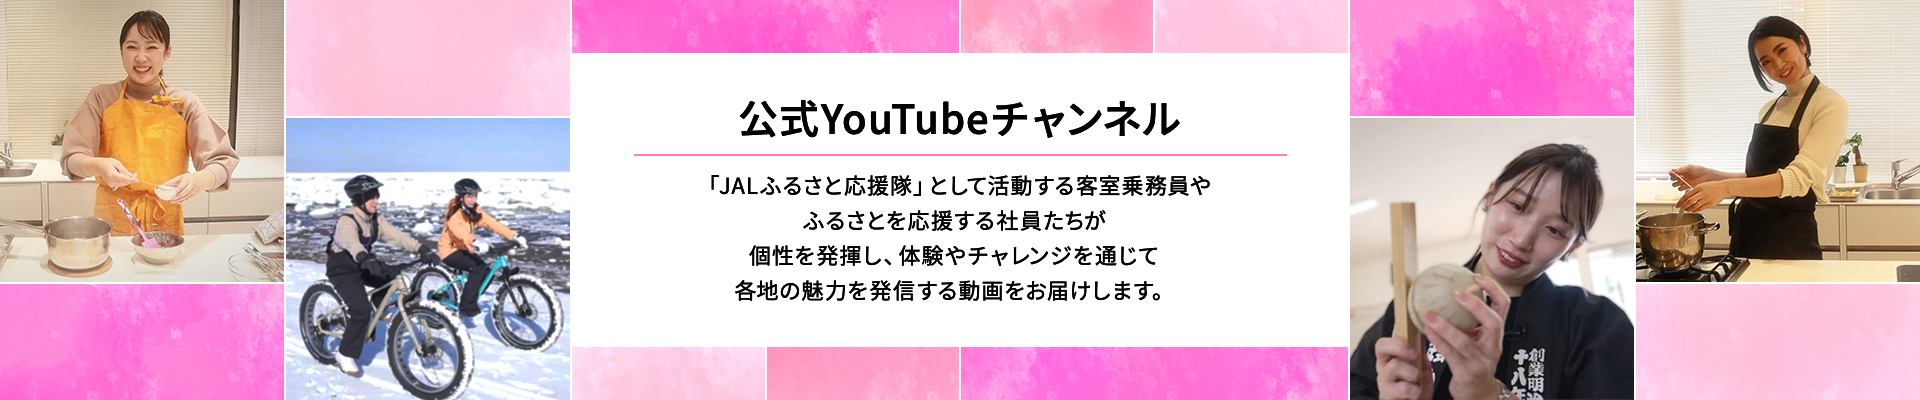 公式YouTubeチャンネル 「JALふるさと応援隊」として活動する客室乗務員やふるさとを応援する社員たちが個性を発揮し、体験やチャレンジを通じて各地の魅力を発信する動画をお届けします。